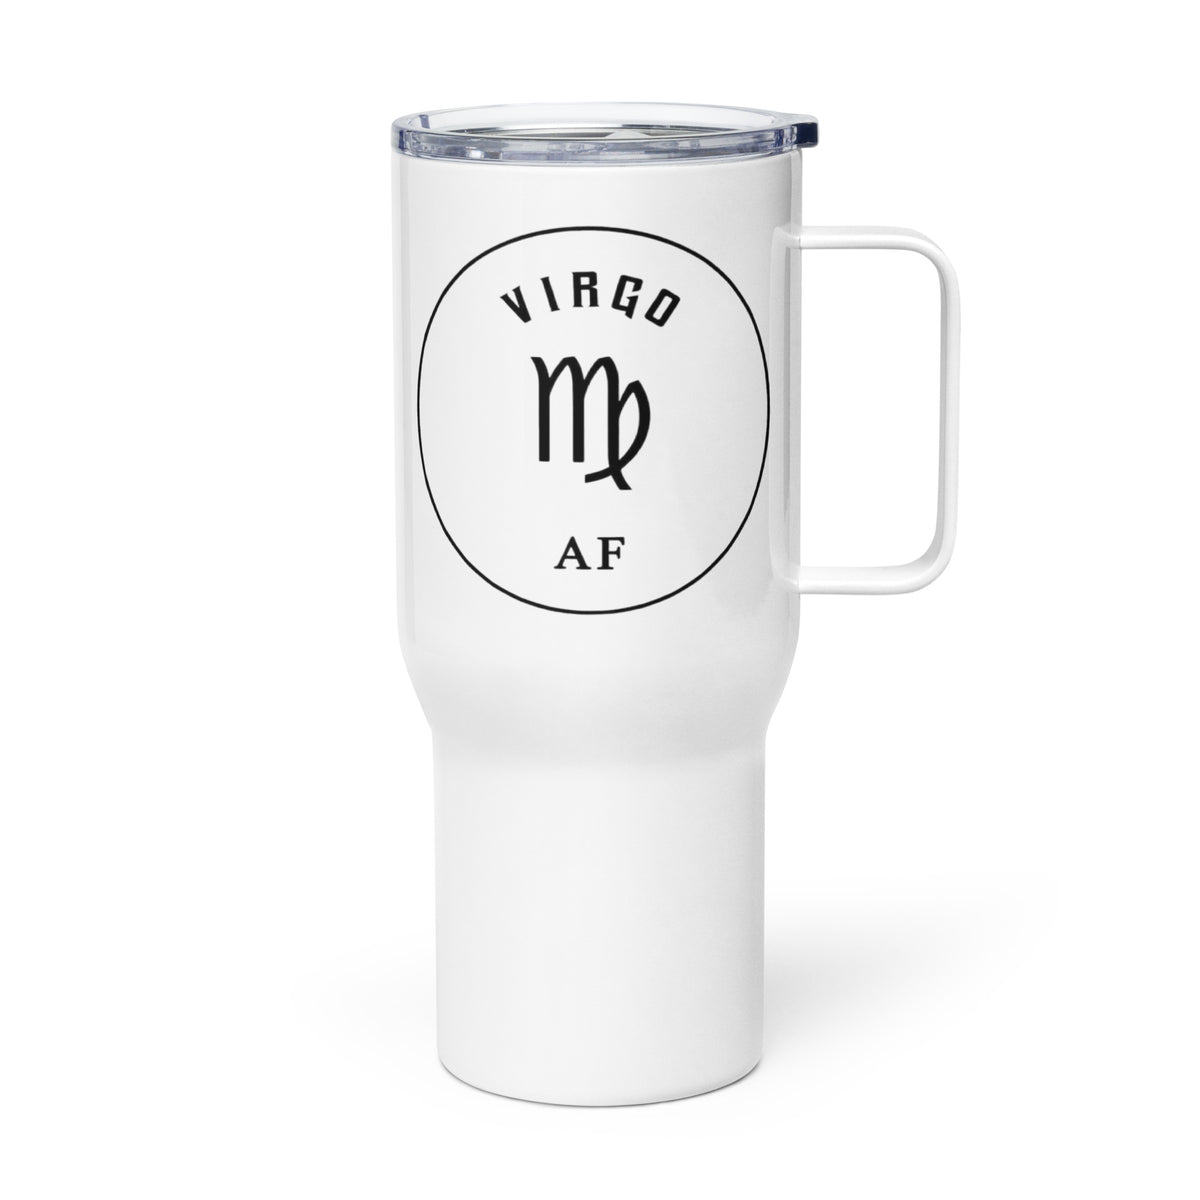 Virgo AF Travel mug with A Handle